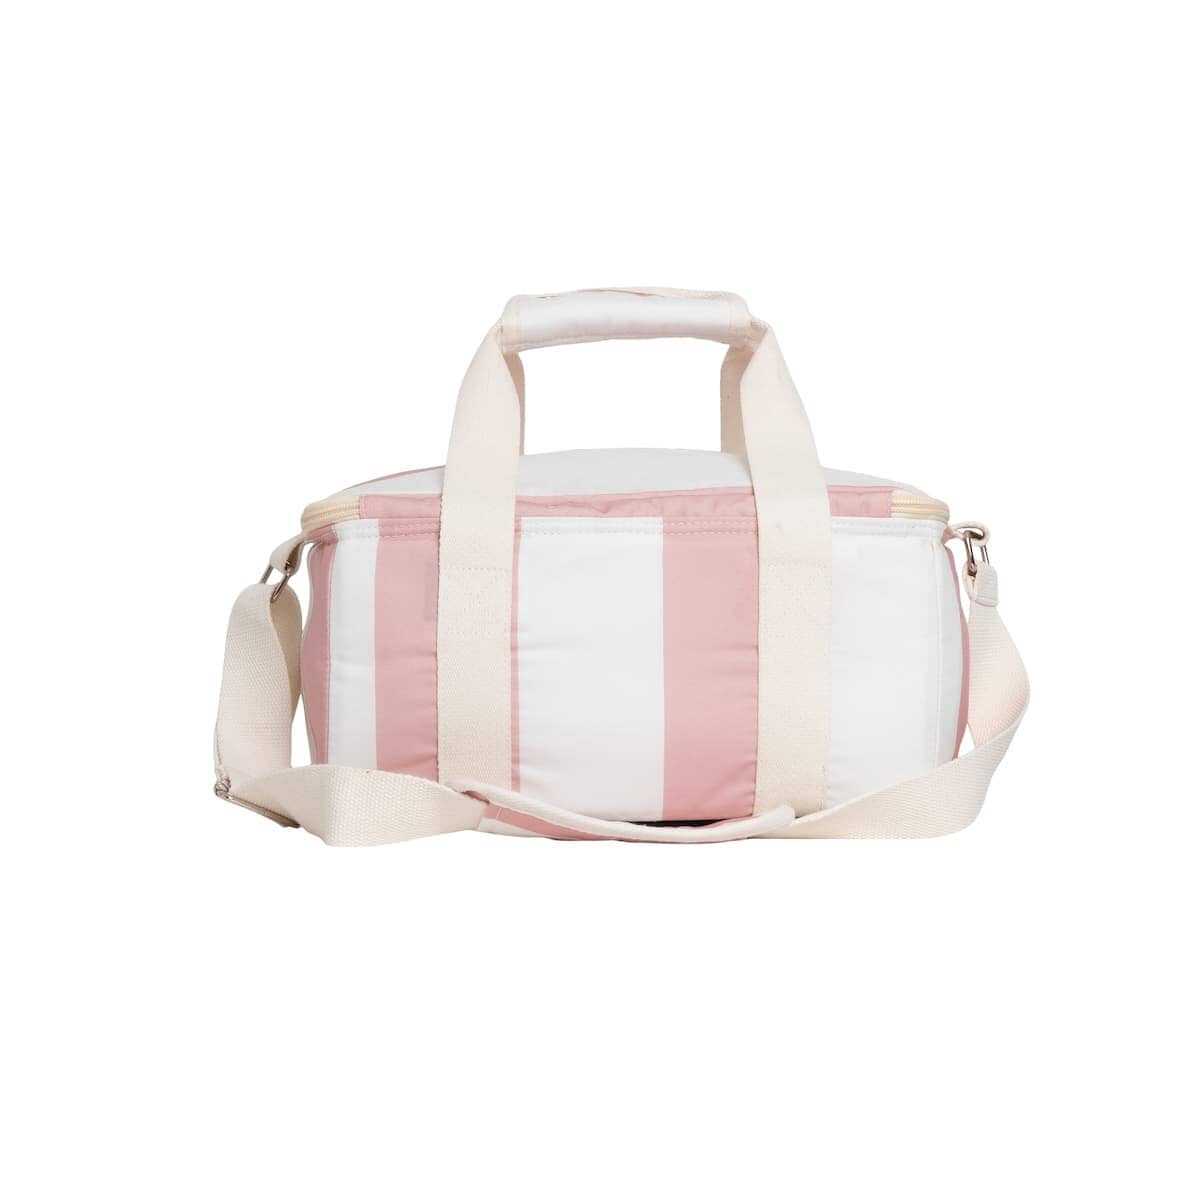 studio image of back pink holiday cooler bag